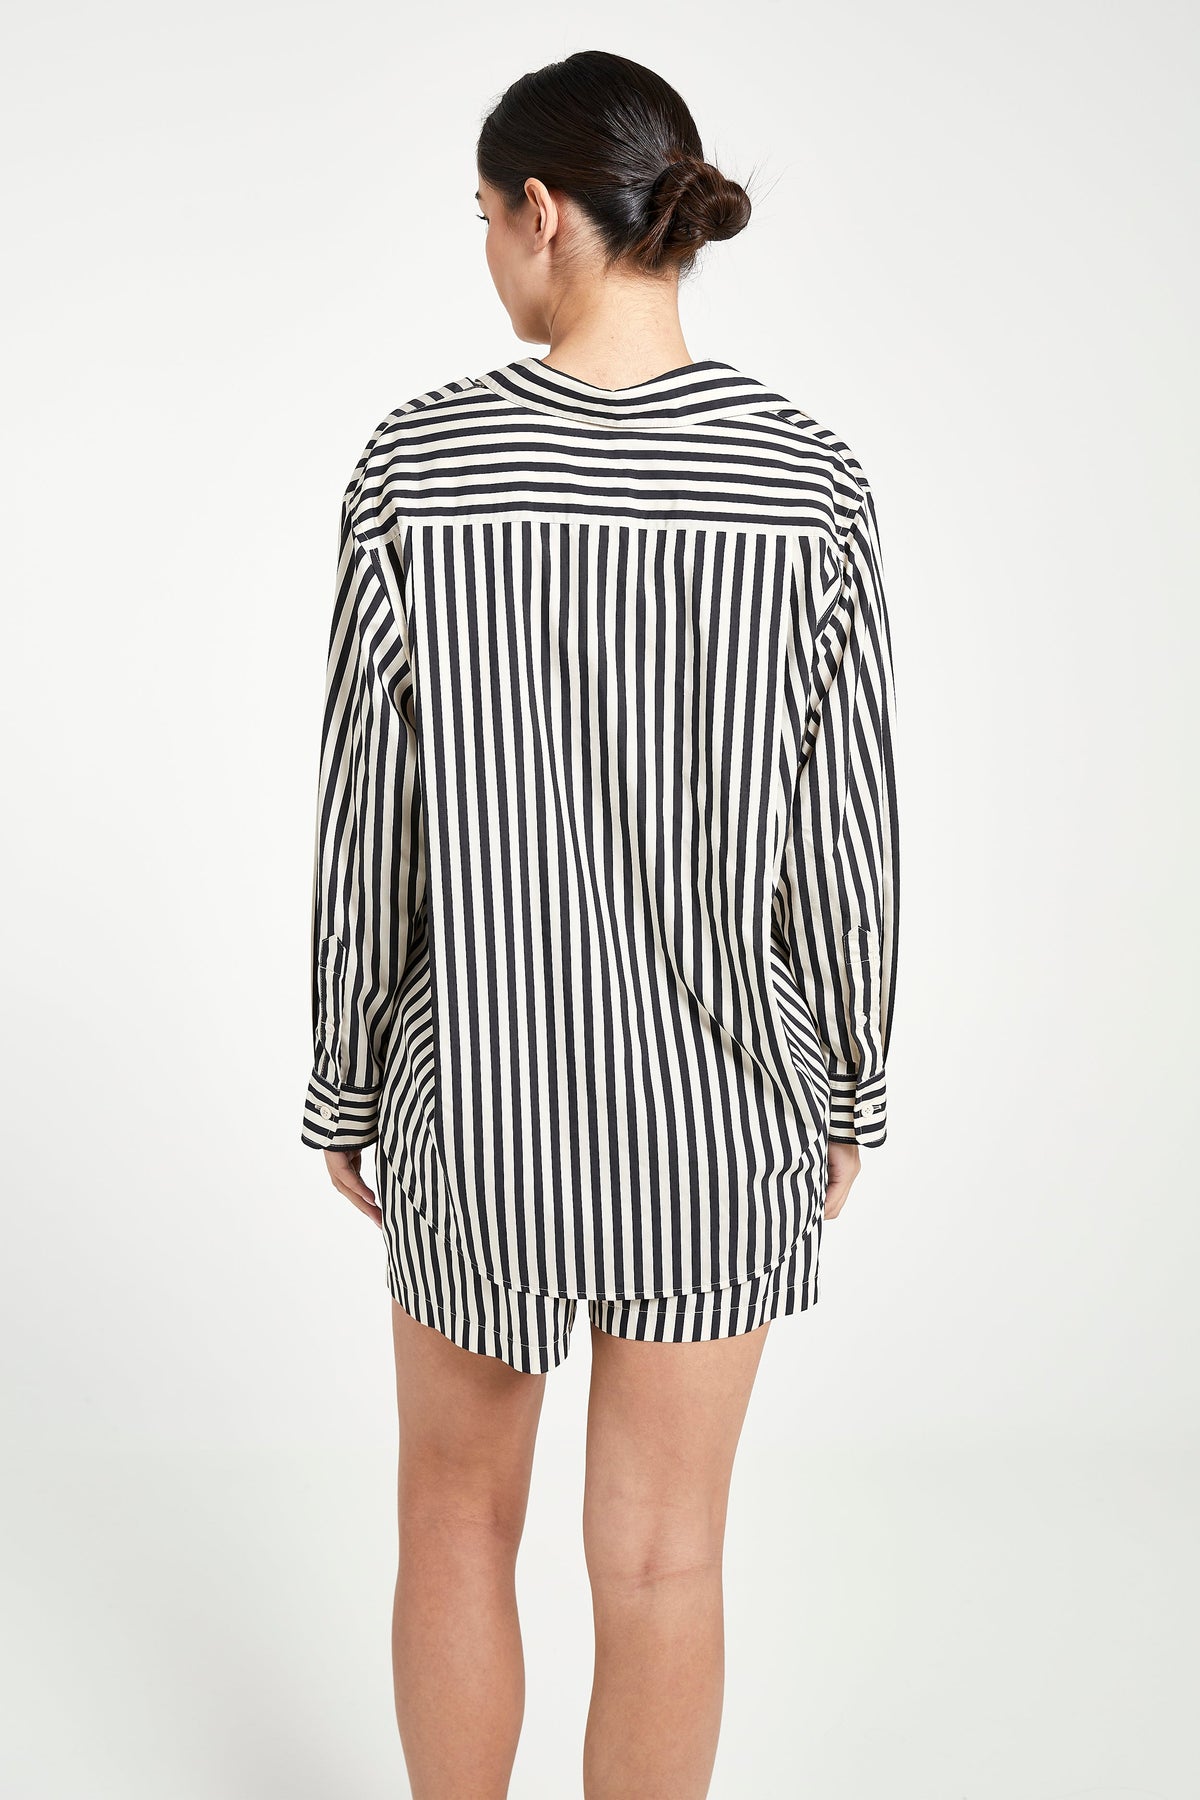 Striped Cotton Boyfriend Shirt - Cream/Black